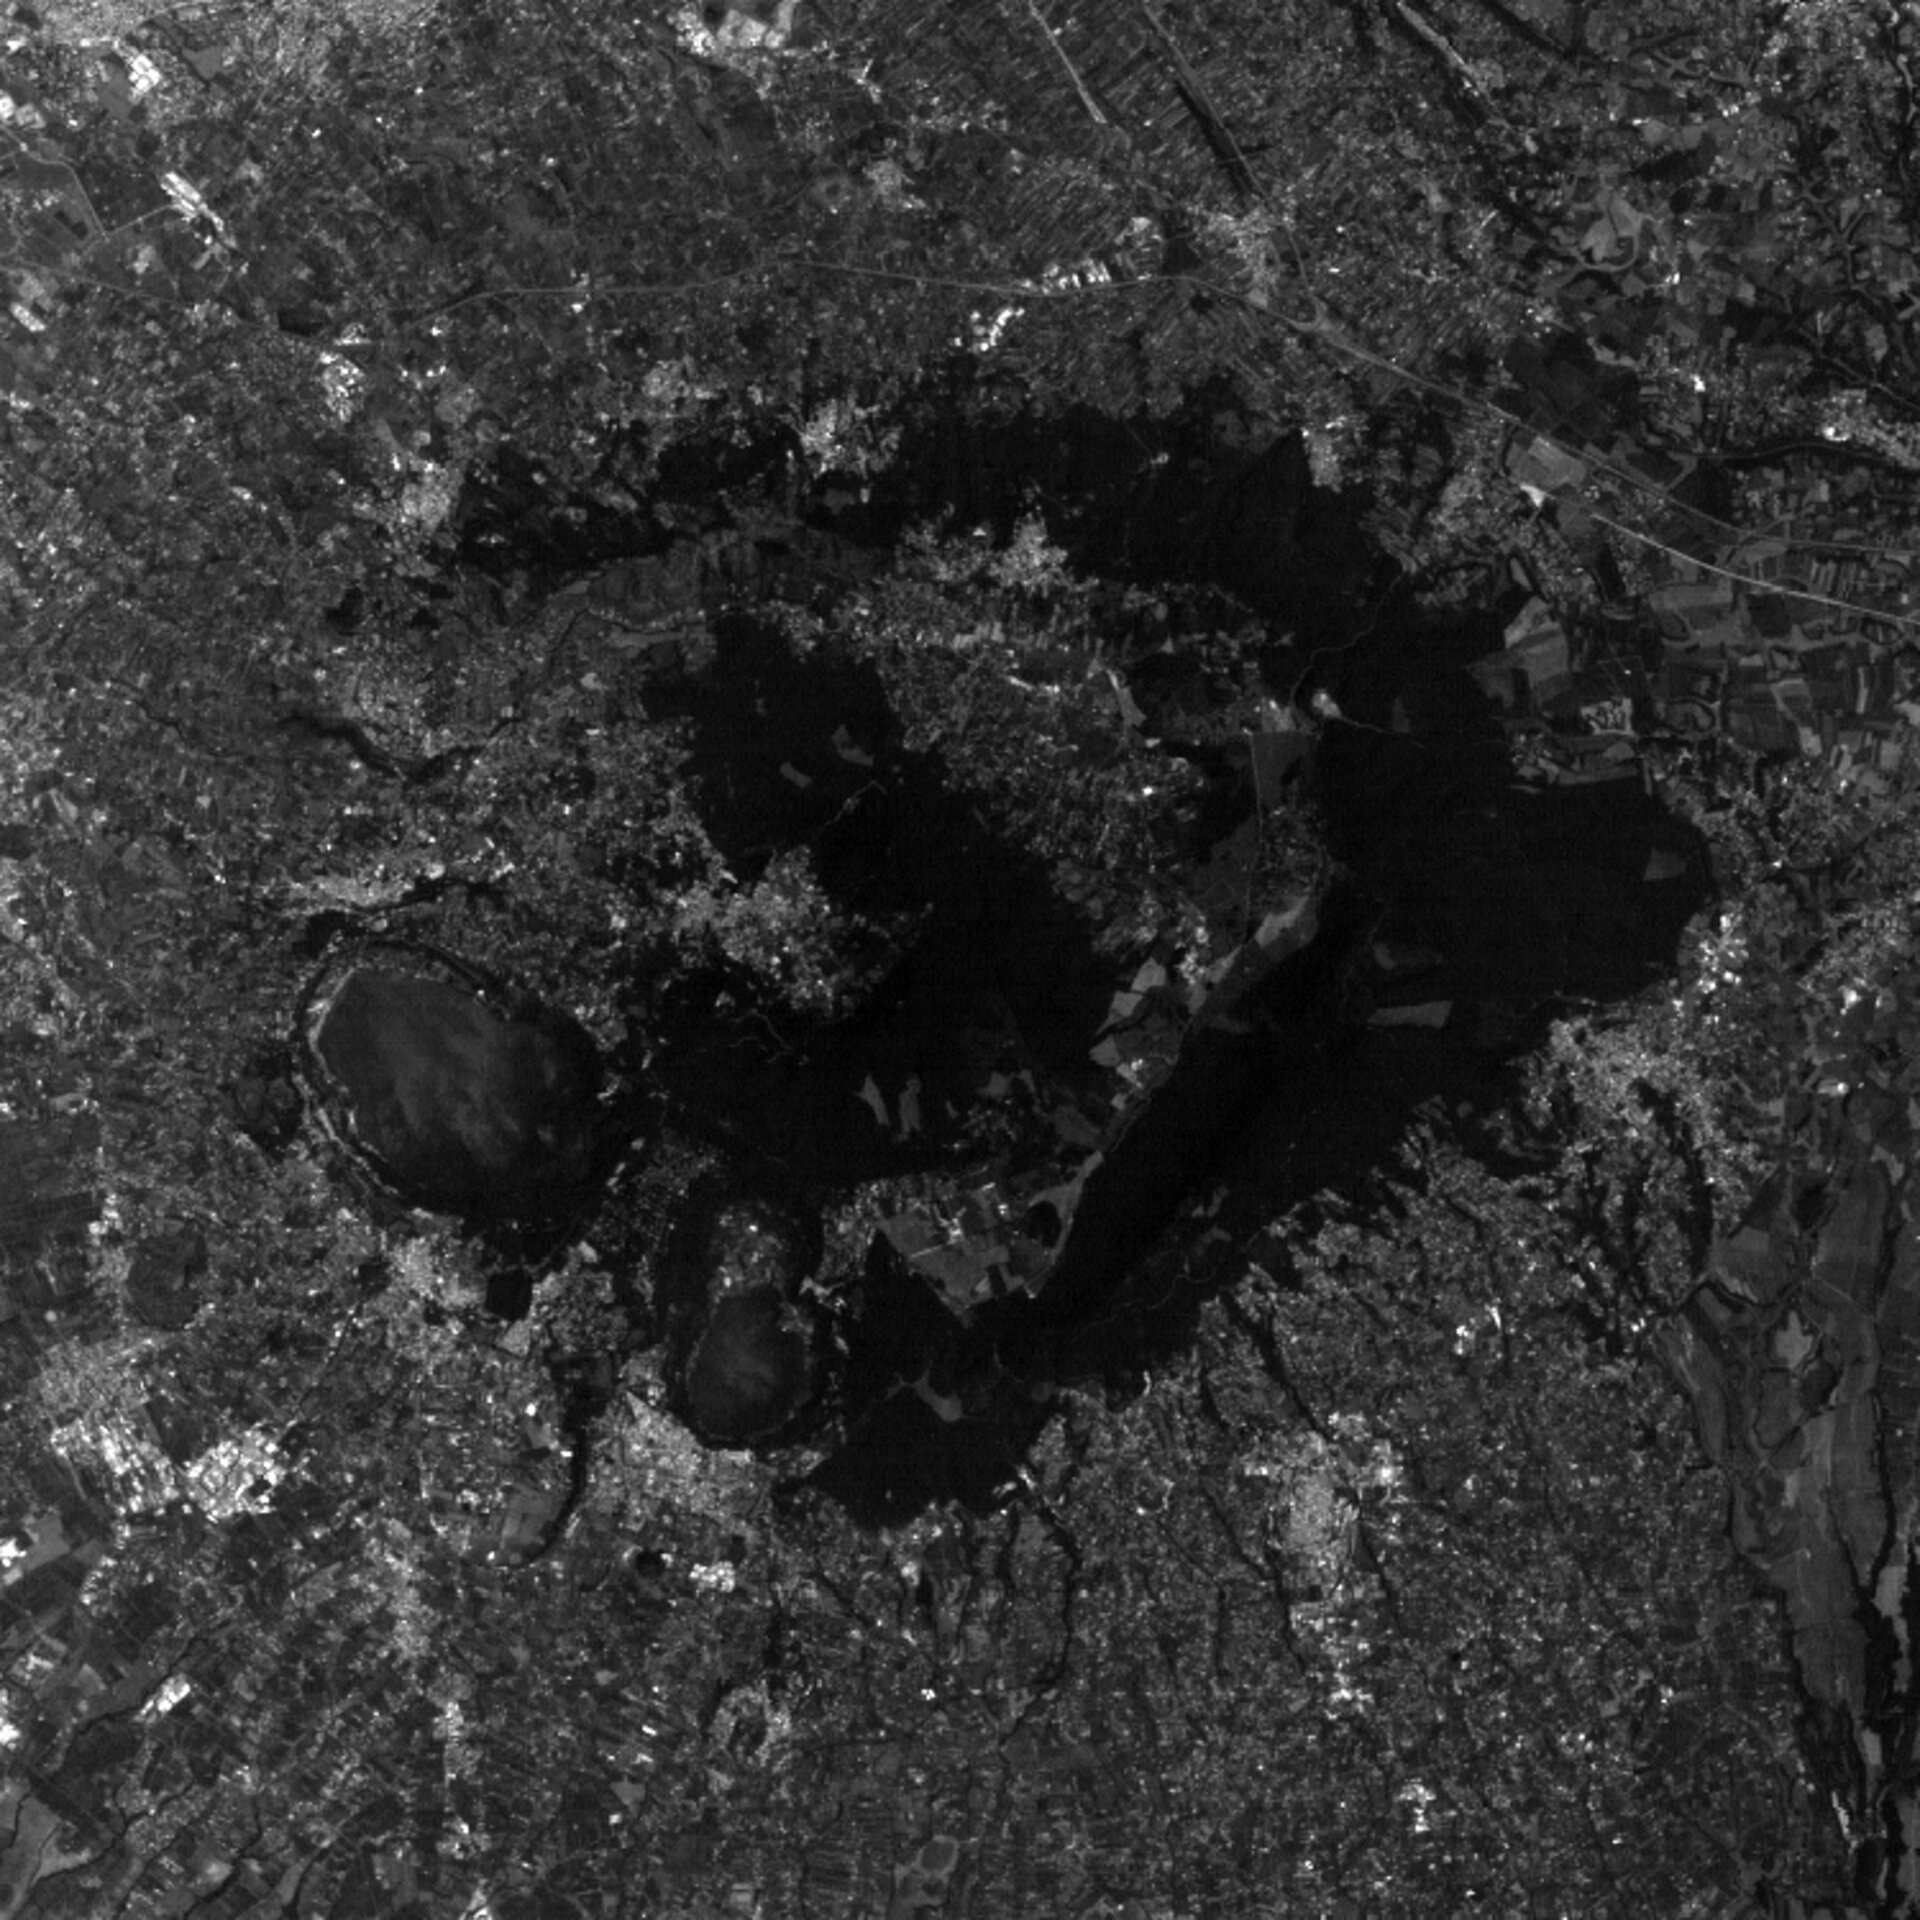 Band 1, Landsat 7 image of Alban Hills